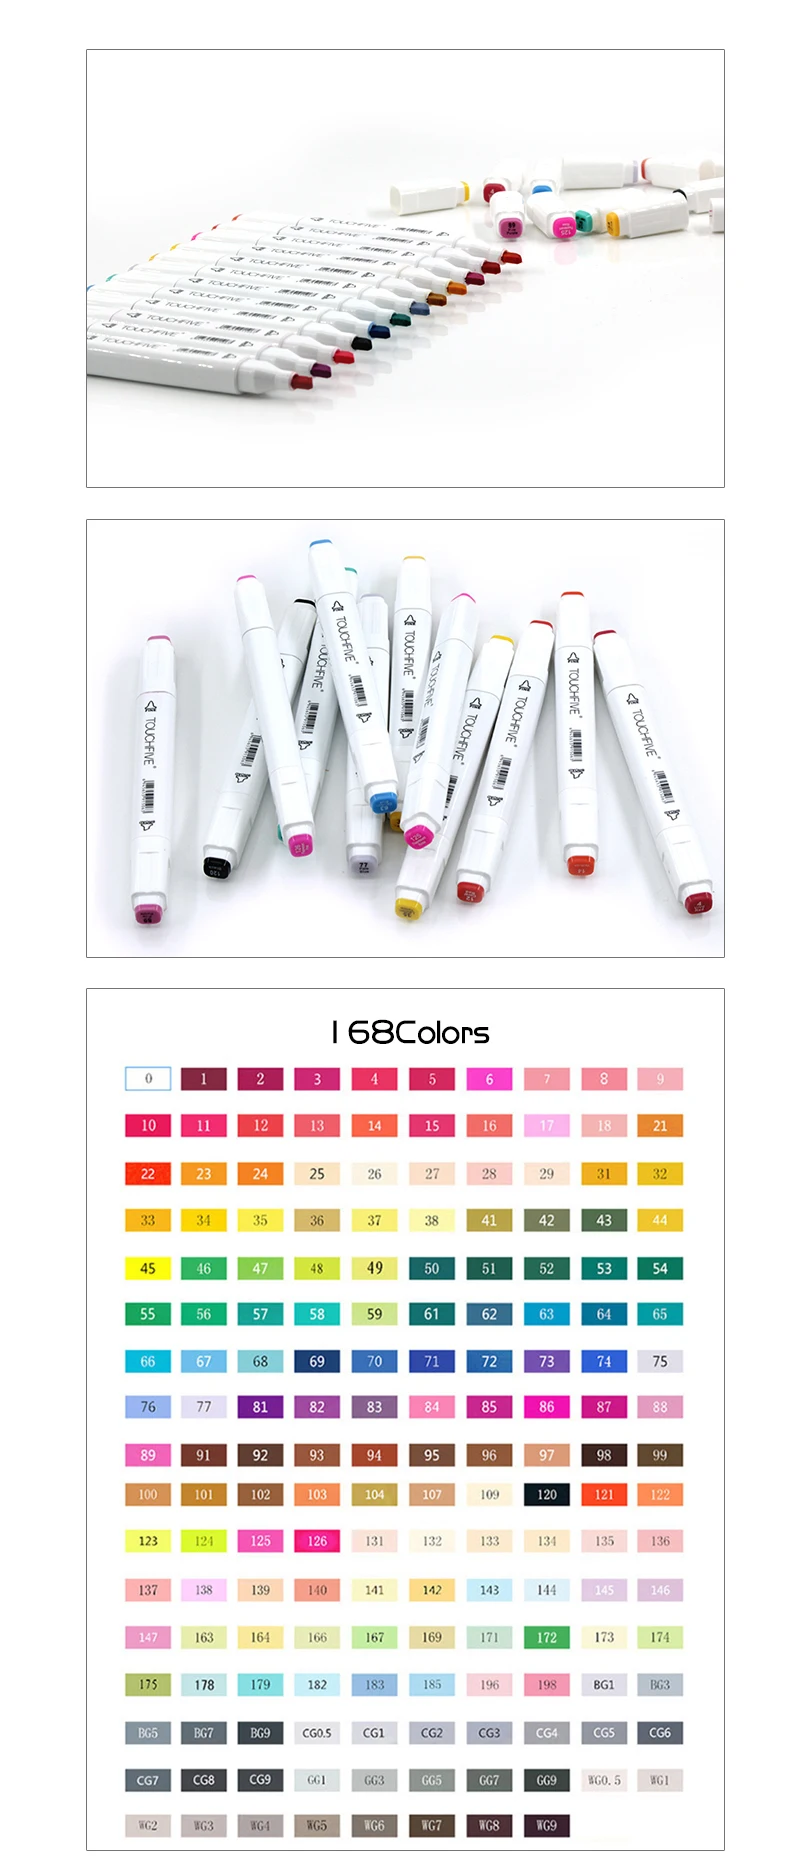 Твин кисть Маркер Набор Touchfive маркер для граффити ручка набор Touchnew эскизные маркеры 60 цветов Ручка для рисования манга дизайн для школы